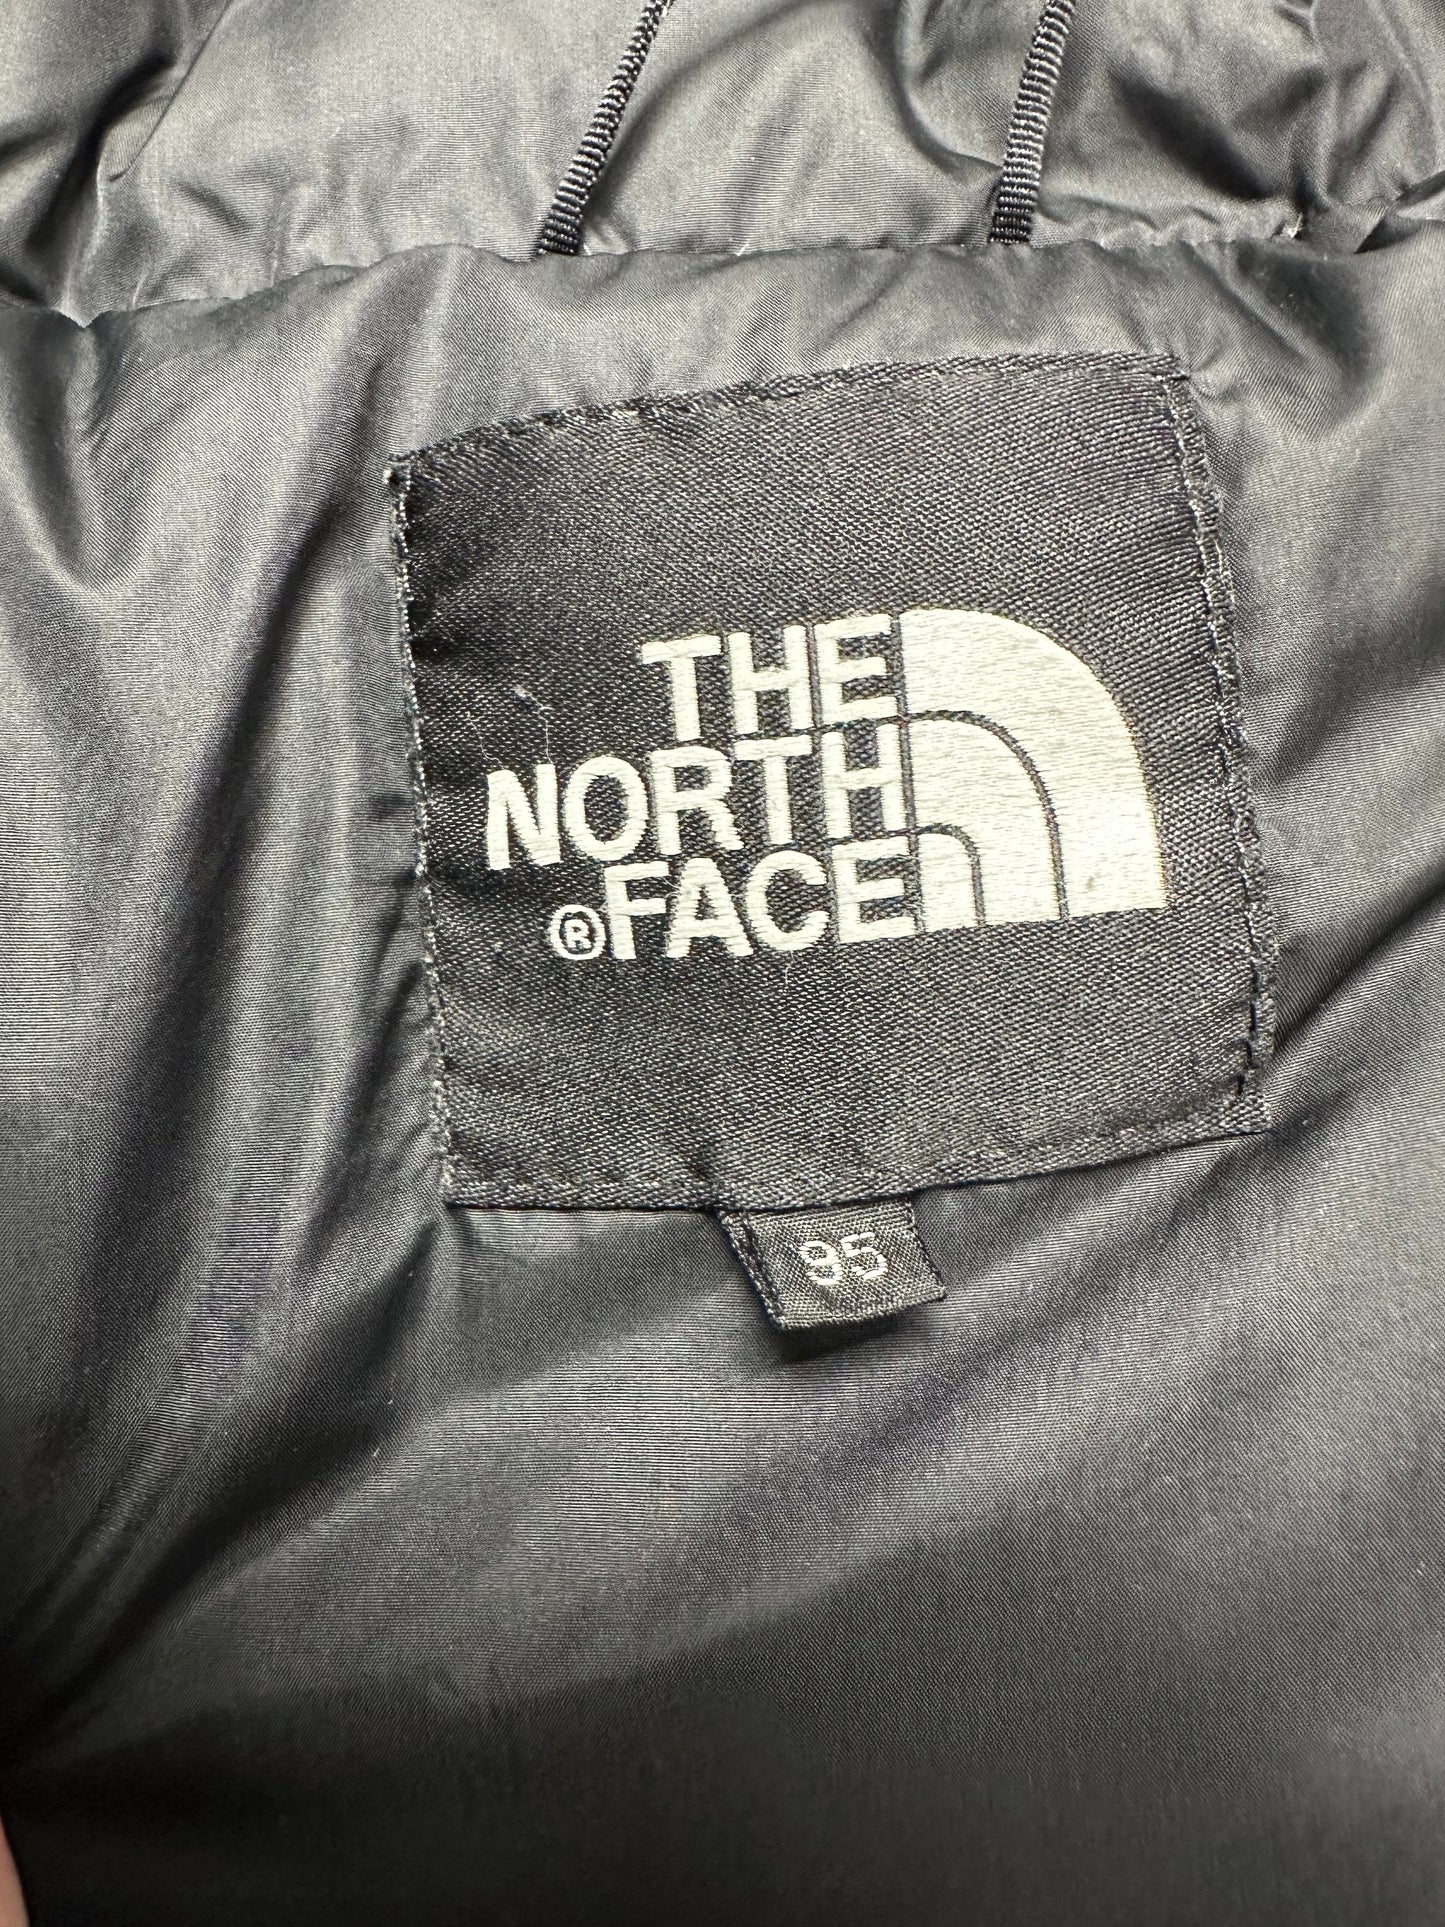 10015【THE NORTH FACE】ザノースフェイス メンズ ヌプシダウンジャケット 700フィル イエロー 95